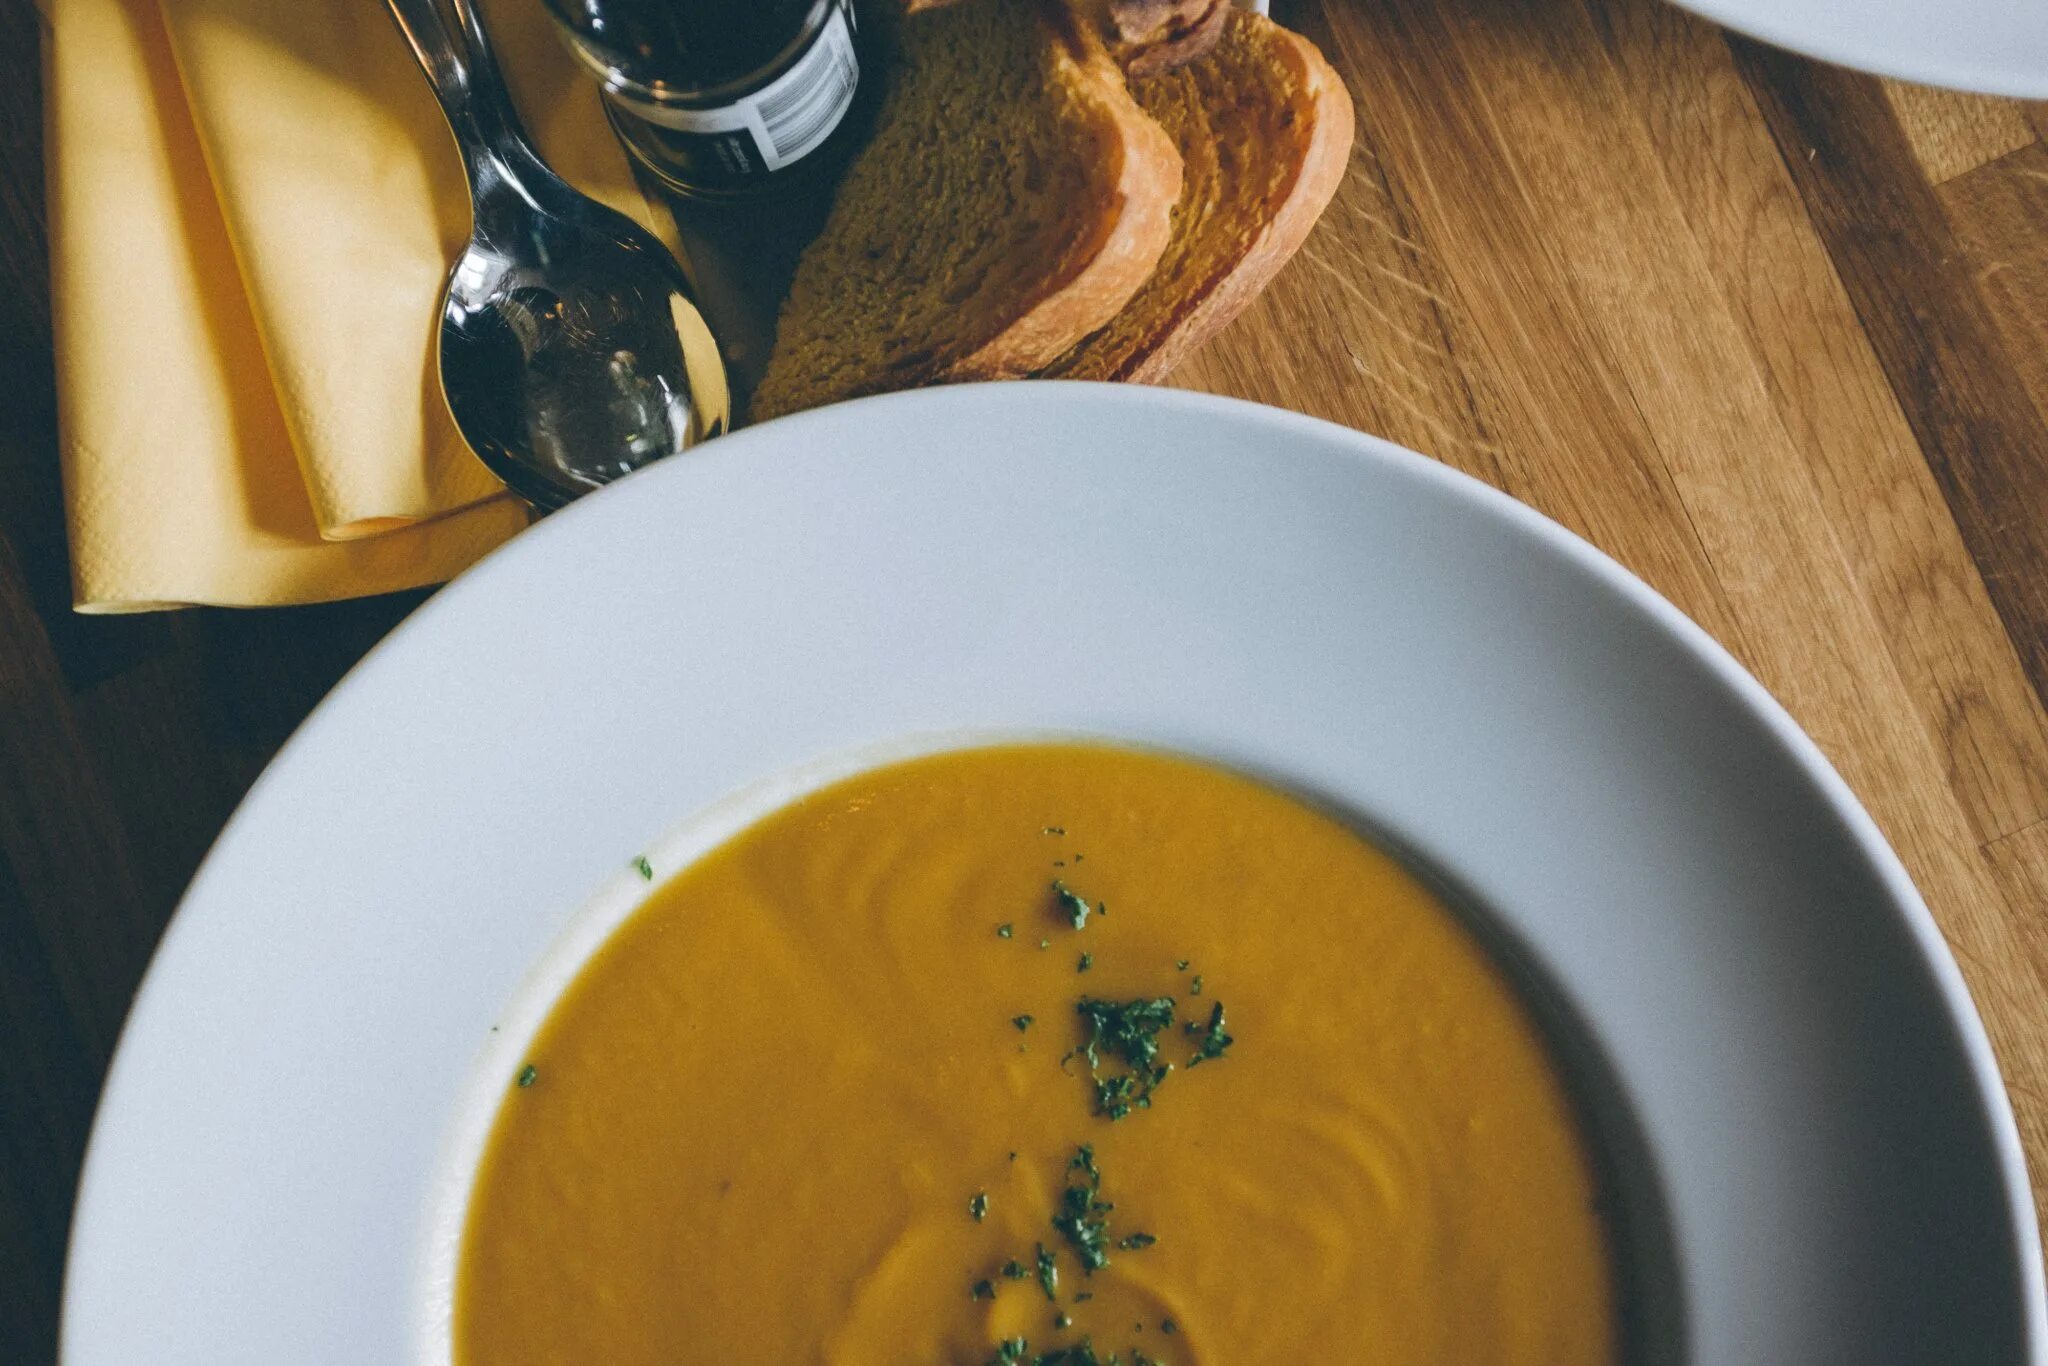 Your soup. Мавританский суп. Суп на красивом фоне. Тыквенный суп подача в ресторане современная. Германия: ресторан-Vendome тыквенный суп.